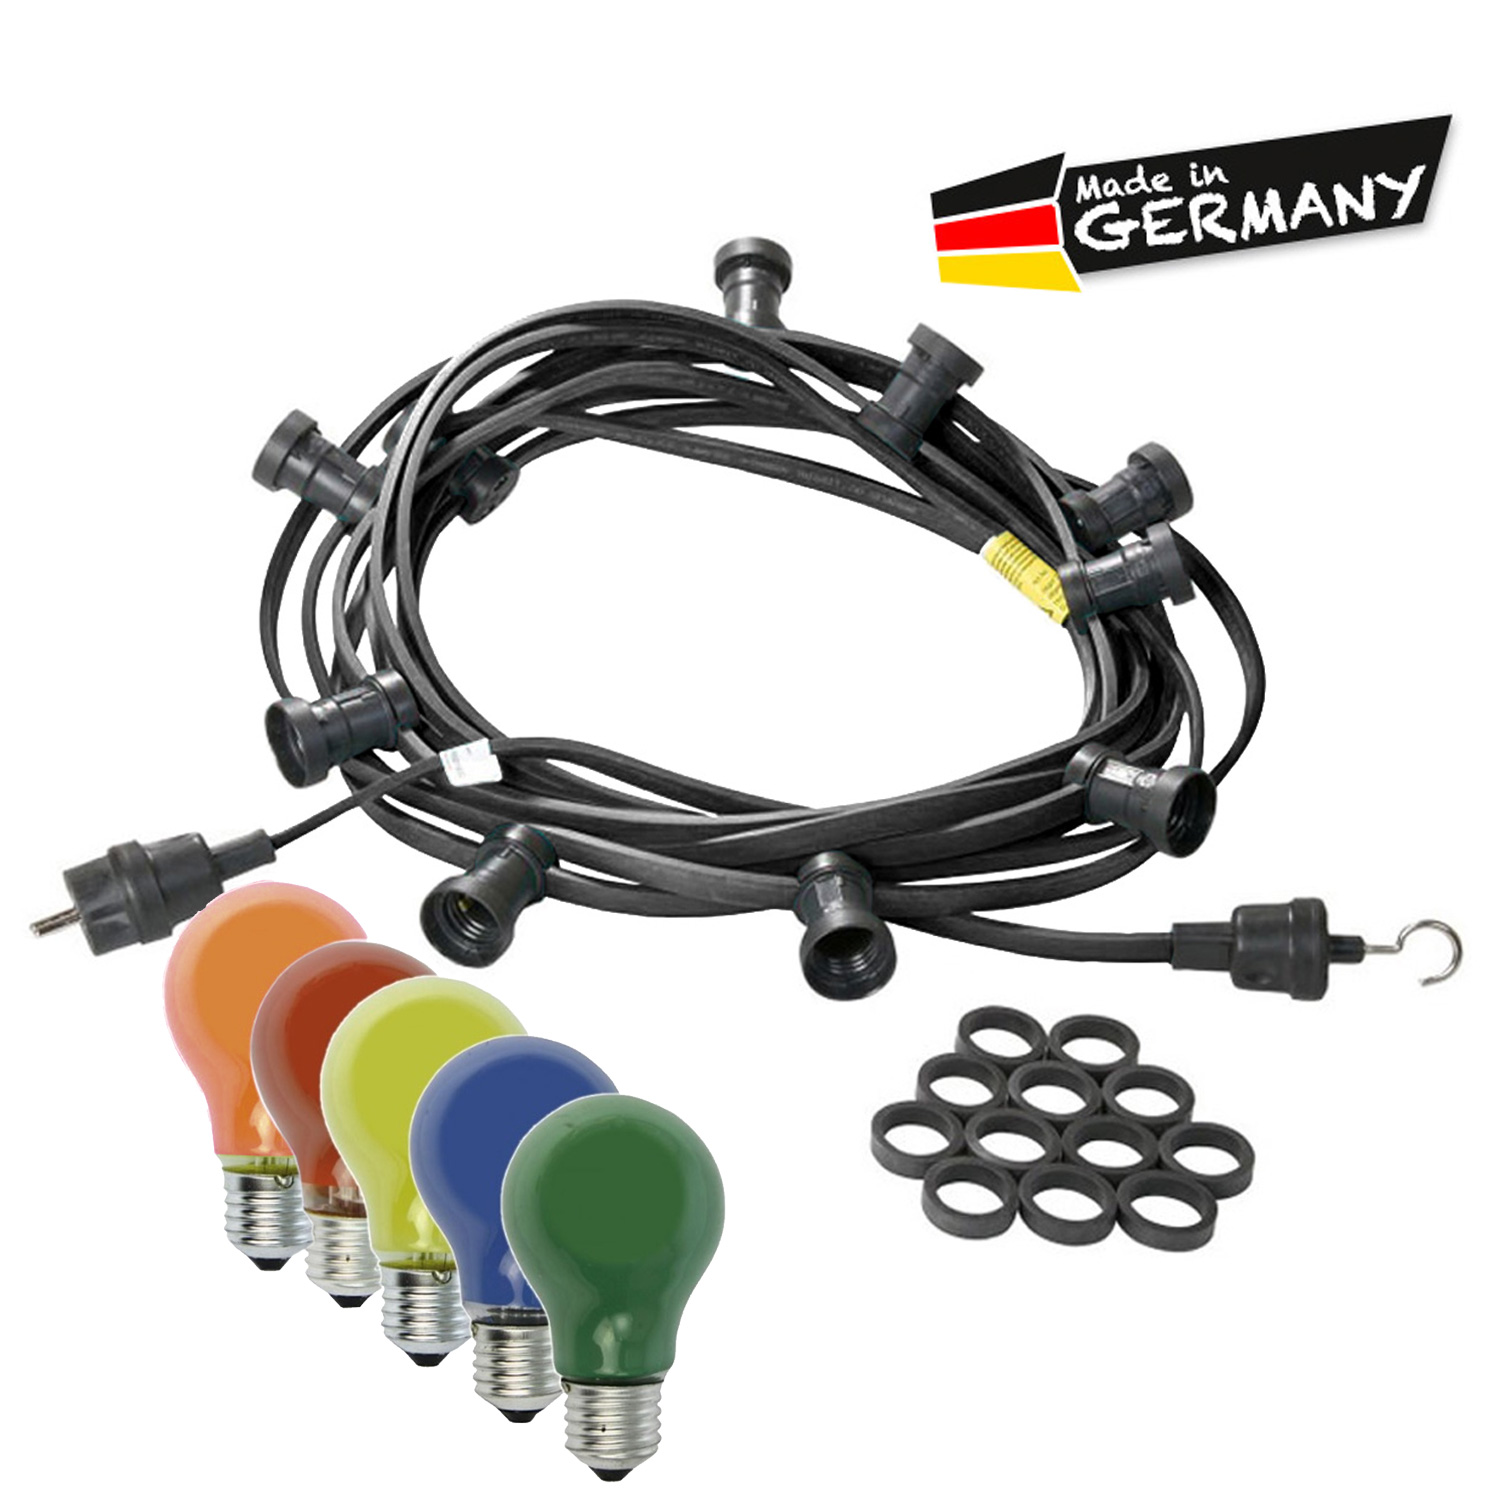 Illu-/Partylichterkette 40m - Außenlichterkette schwarz - Made in Germany - 40 bunte 25W Glühlampen